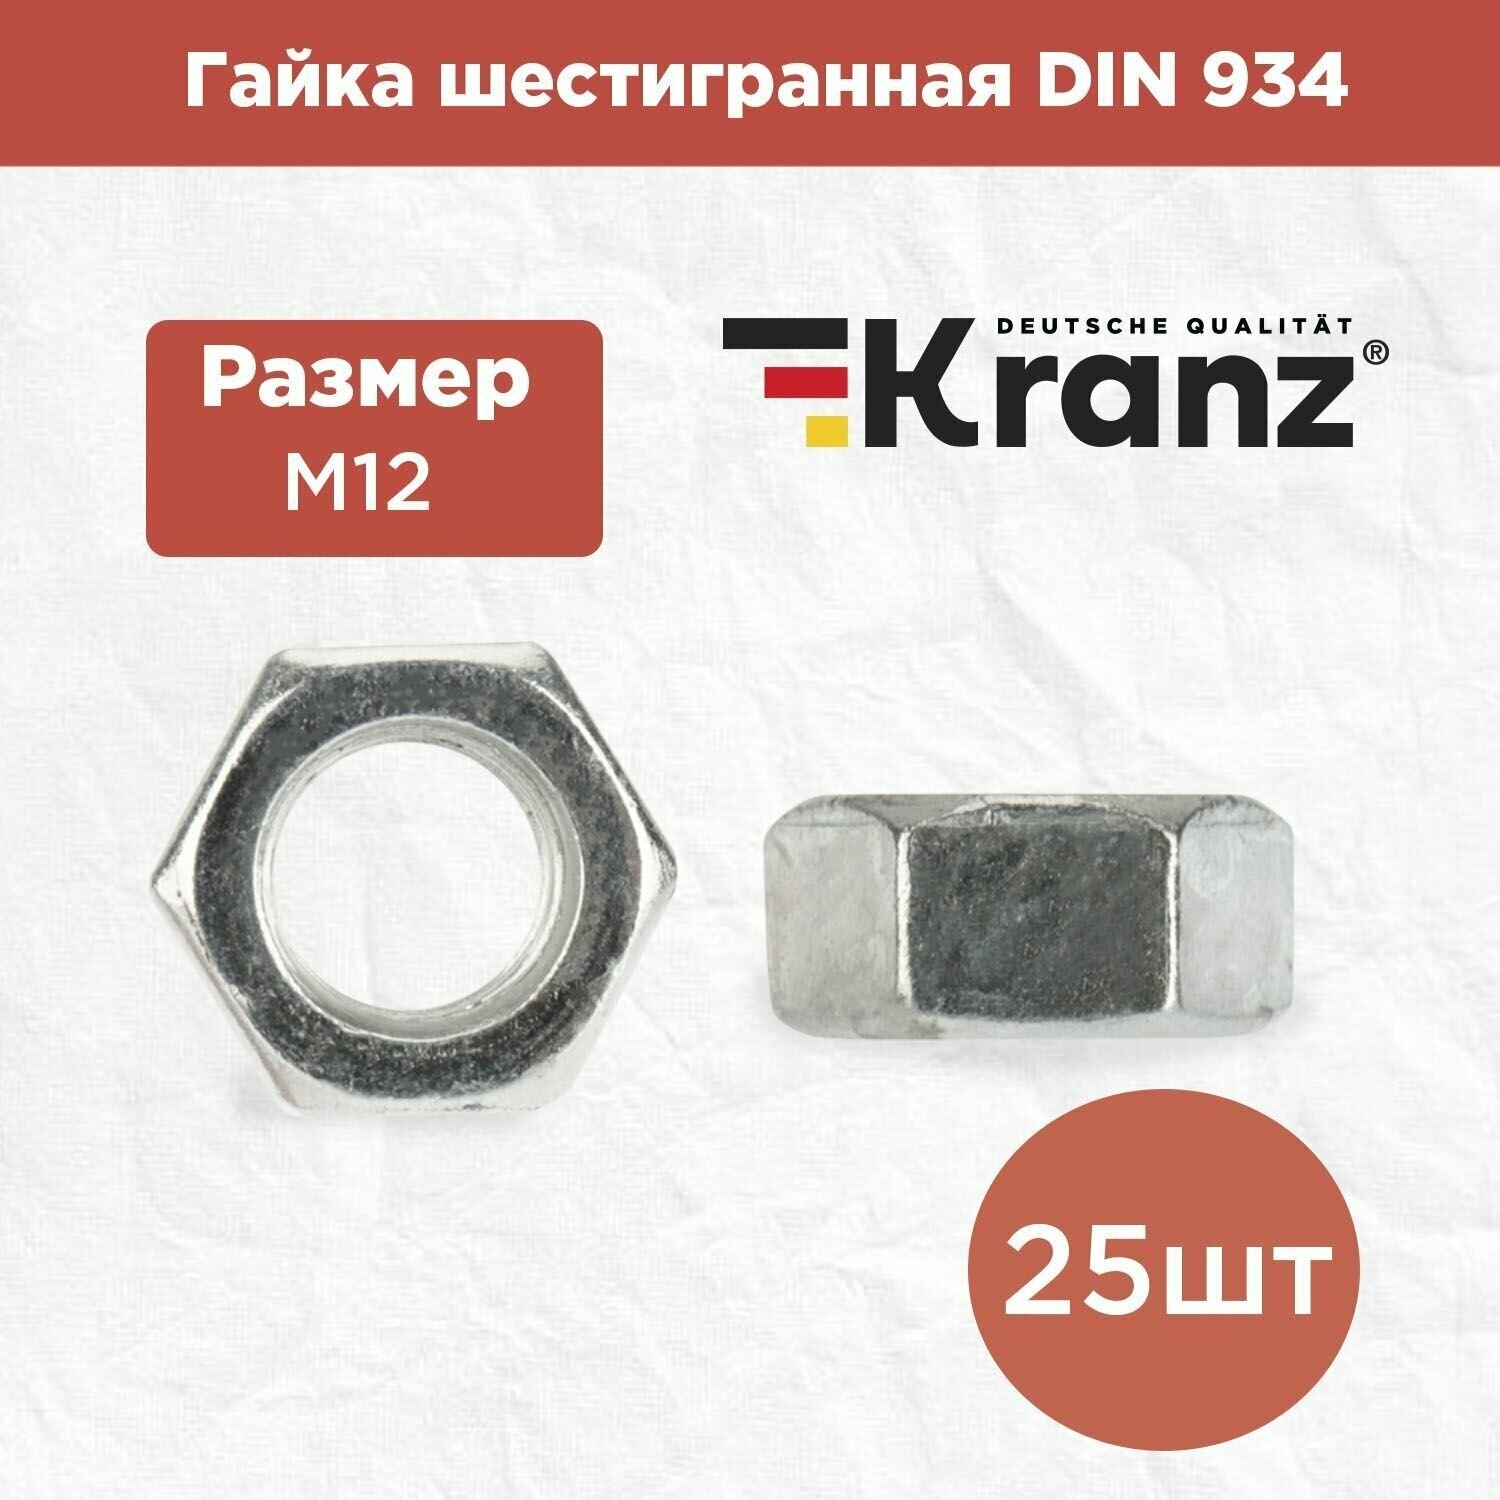 Гайка шестигранная KRANZ с противокоррозионным покрытием стандарт DIN 934 M12 короб 25 штук